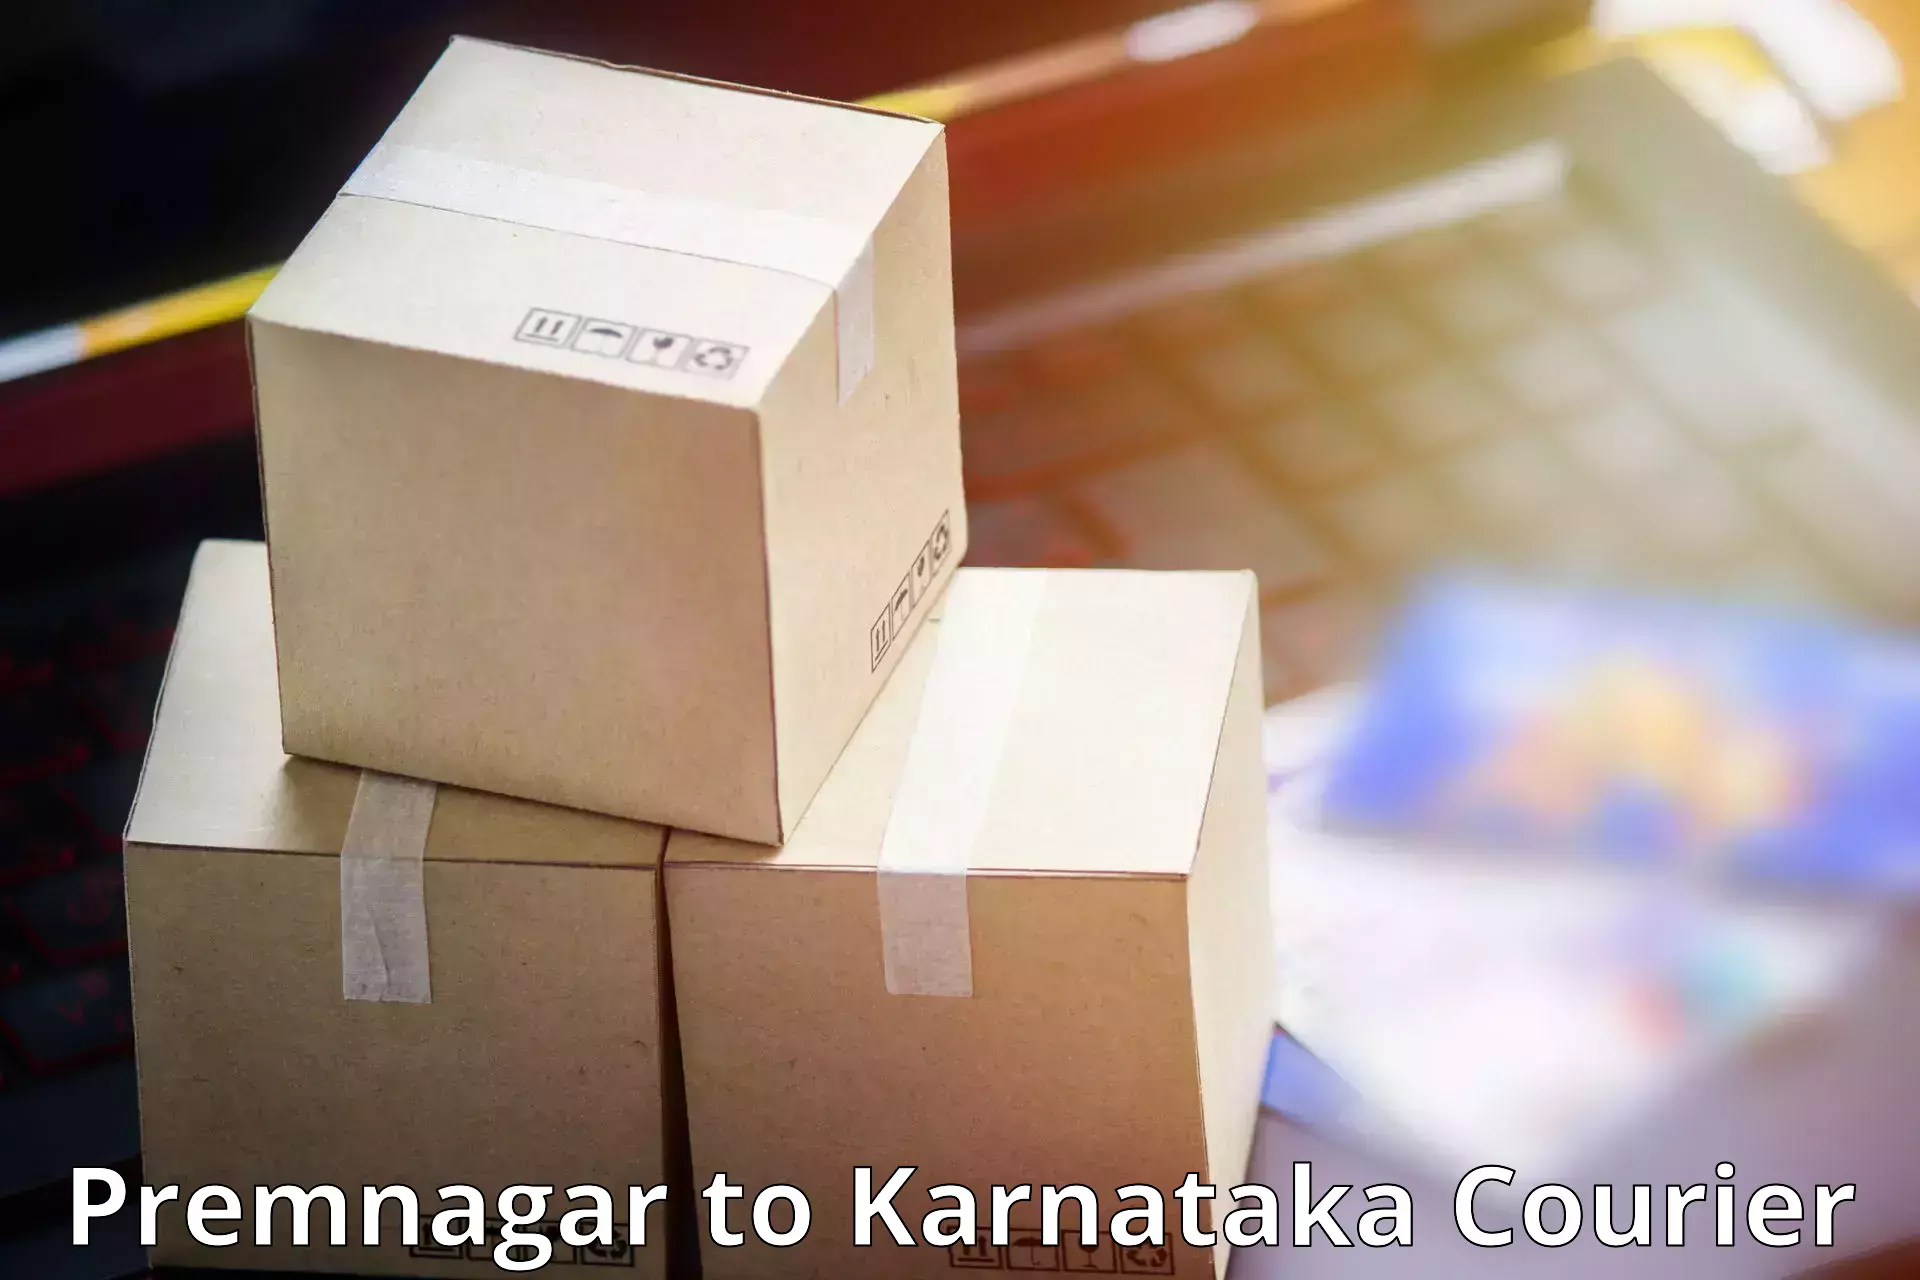 24-hour courier service in Premnagar to Hagaribommanahalli